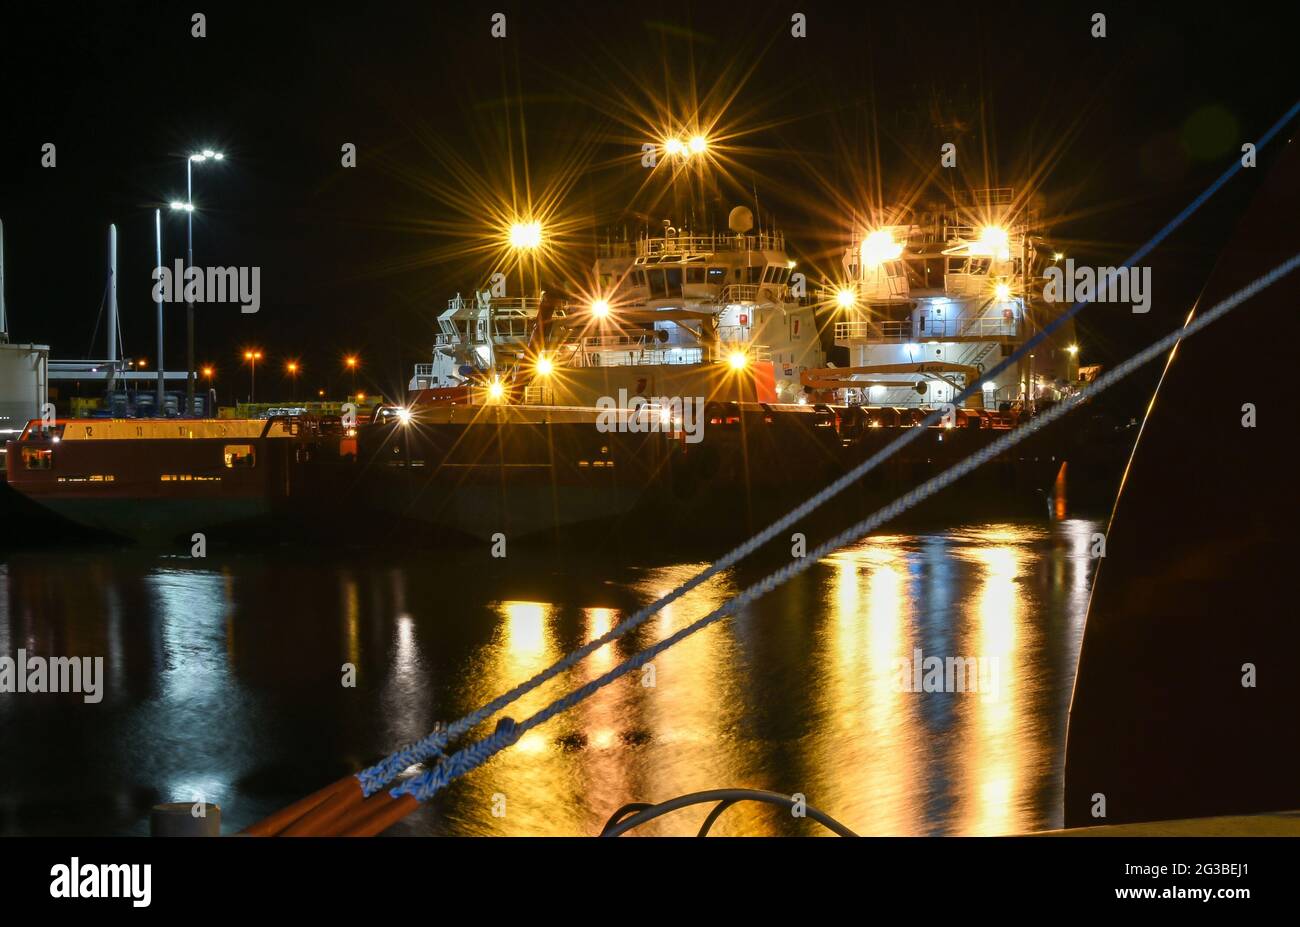 Den Helder, Niederlande. November 2019. Hafenstimmung. Ein Ölstand und ein Nachtschalender im Hafen von Den Helder, Niederlande. Hochwertige Fotos Stockfoto